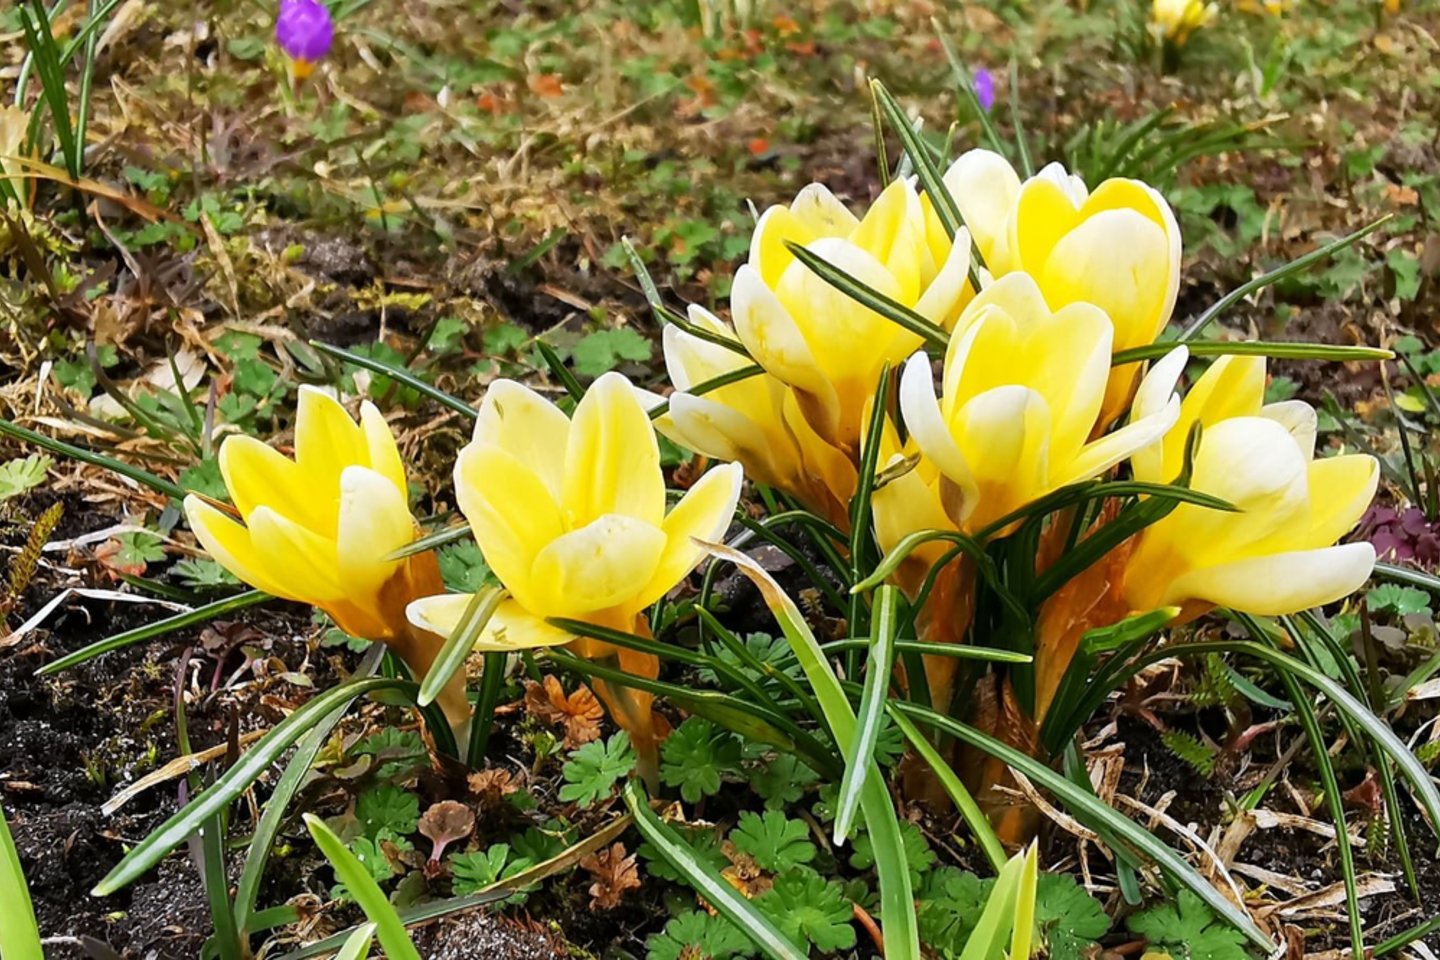 Daugelio rūšių krokai auginami kaip dekoratyviniai, anksti pavasarį žydintys augalai.<br> S. Berletaitės/Juodkrantės bendruomenės nuotr.